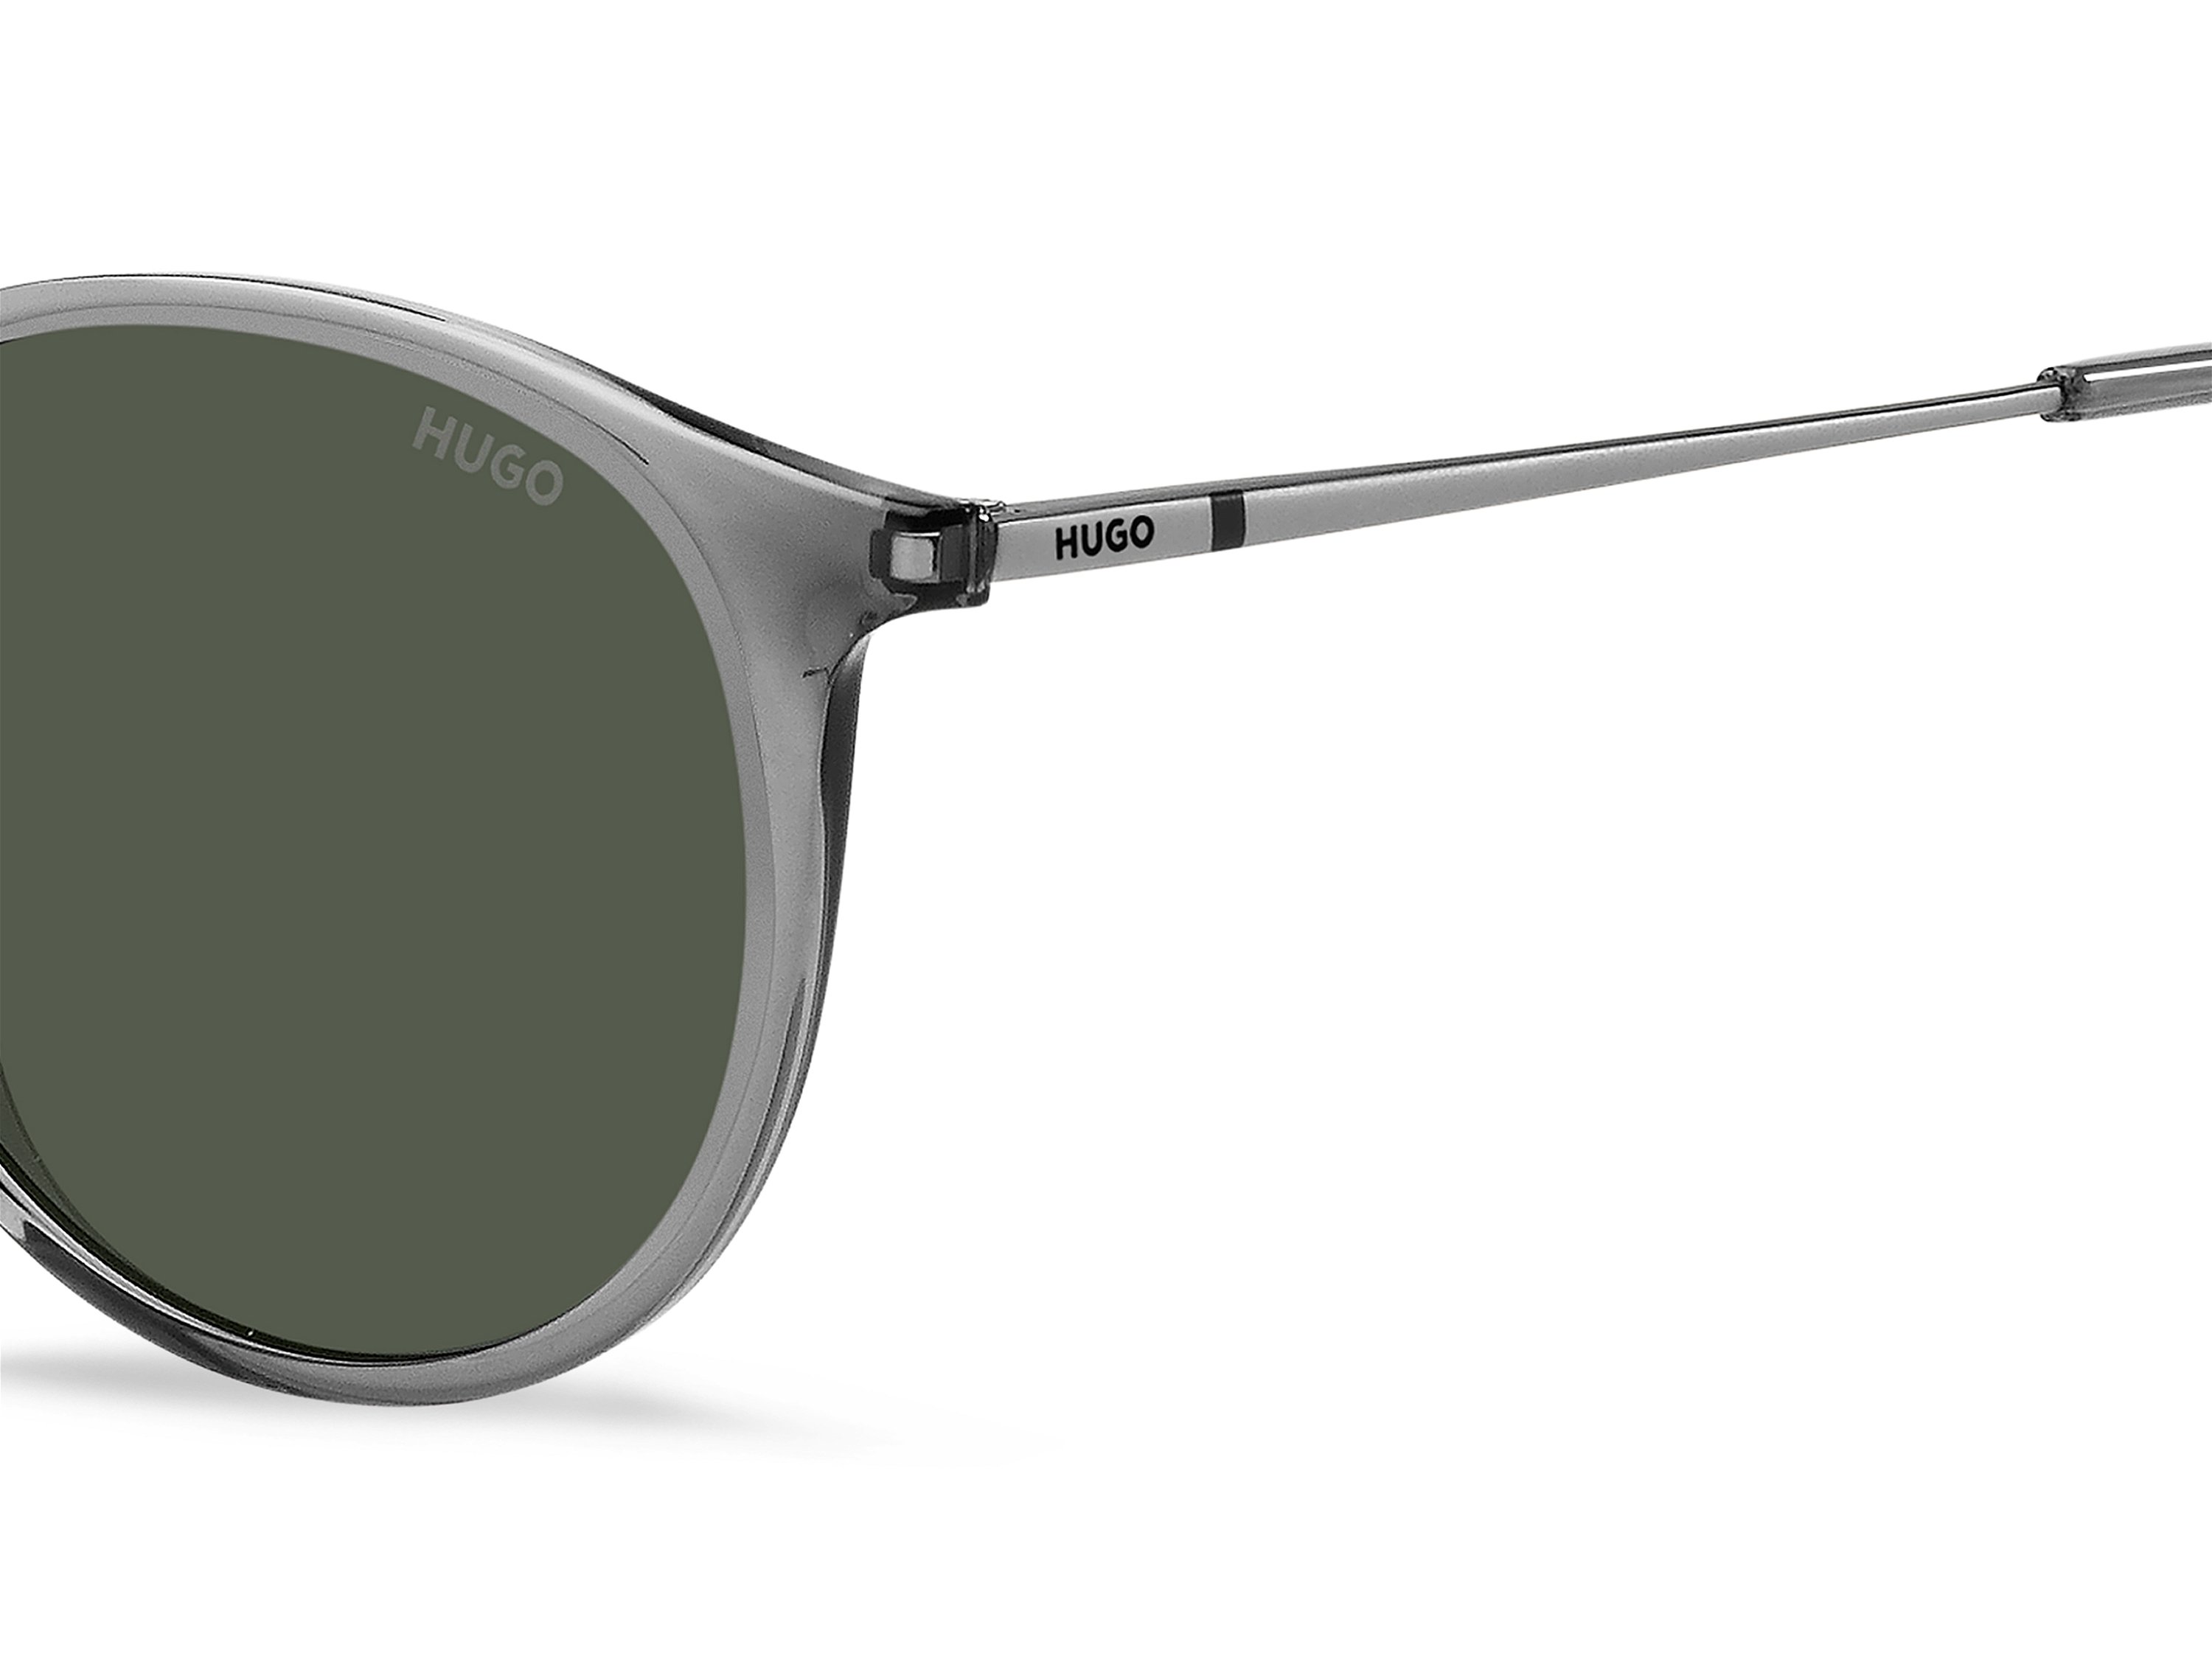 Das Bild zeigt die Sonnenbrille HG1286/S D3X von der Marke Hugo in grau.